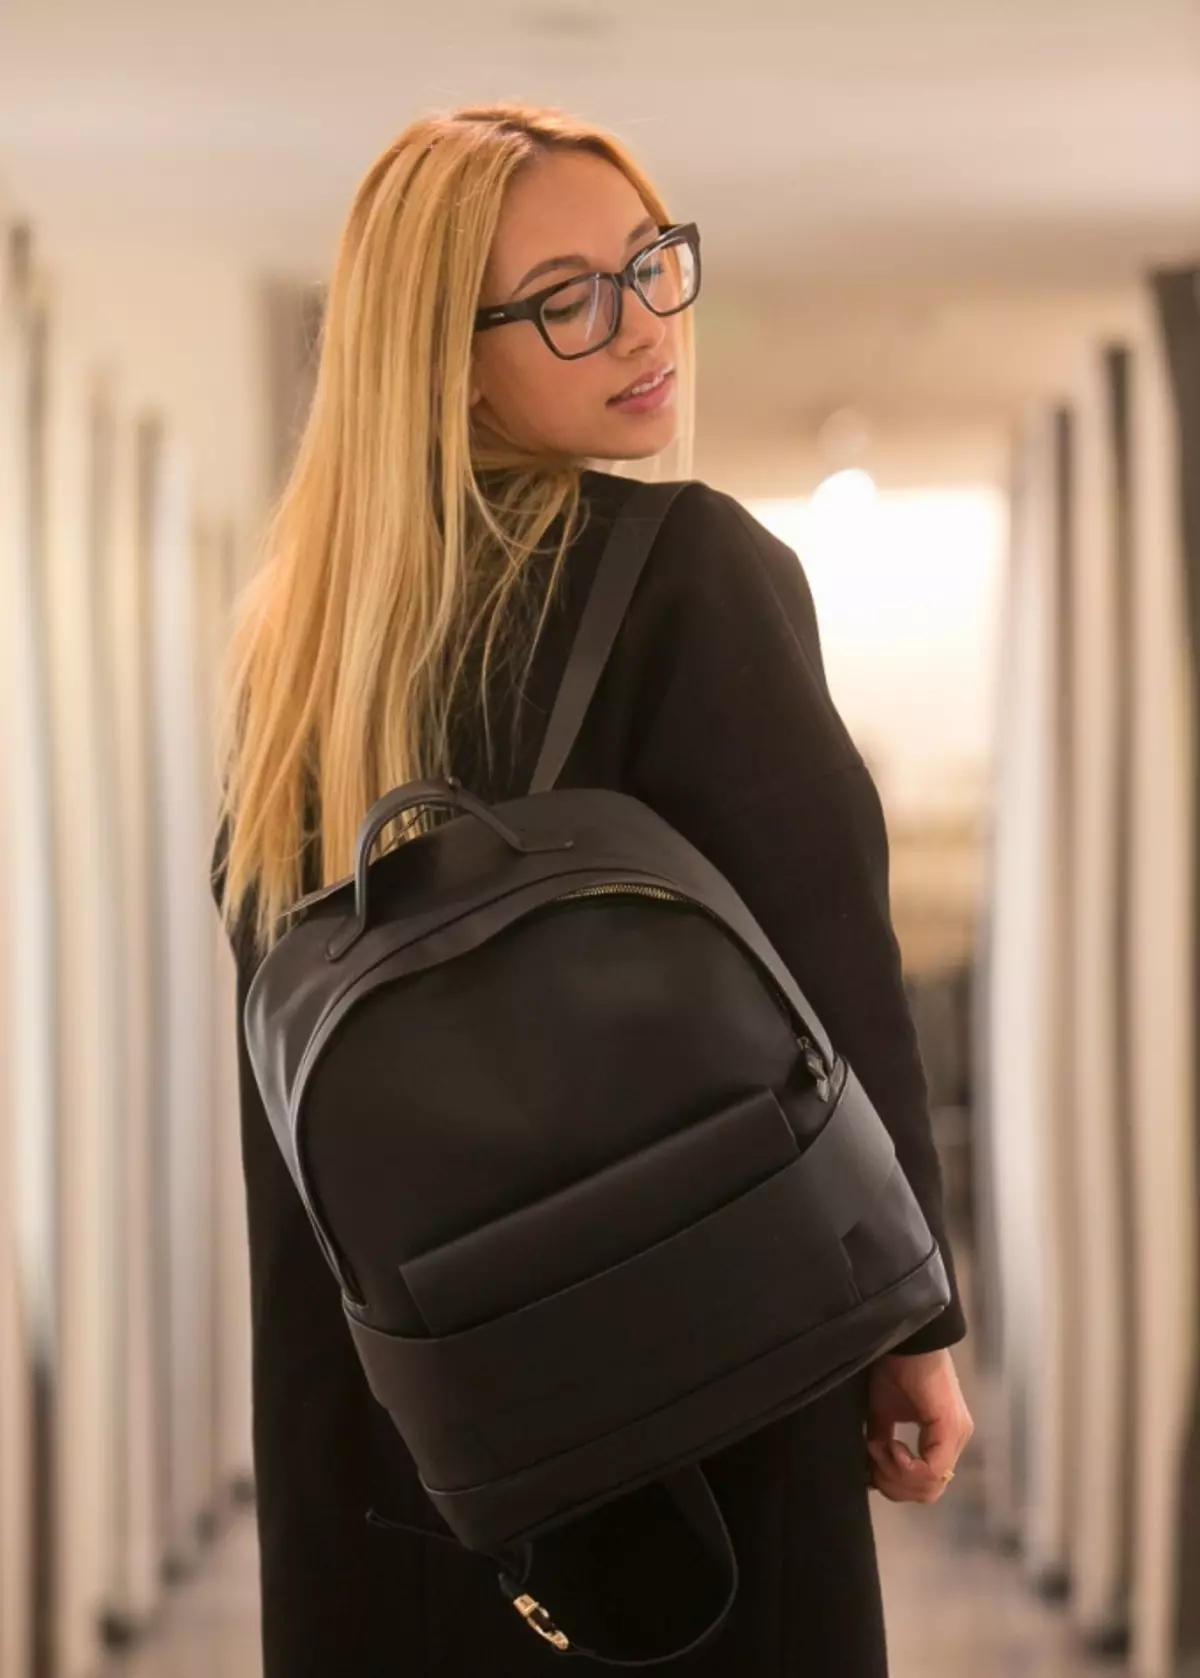 Zara backpacks: ຜູ້ຍິງສີດໍາ, ເດັກນ້ອຍສໍາລັບເດັກນ້ອຍ, ສີຂີ້ເຖົ່າແລະສີແດງ, ພ້ອມທັງແບບກະເປົາຂອງກະເປົາຈາກບໍລິສັດ. ສິ່ງທີ່ດີທີ່ສຸດທີ່ຈະໃສ່? 15437_42